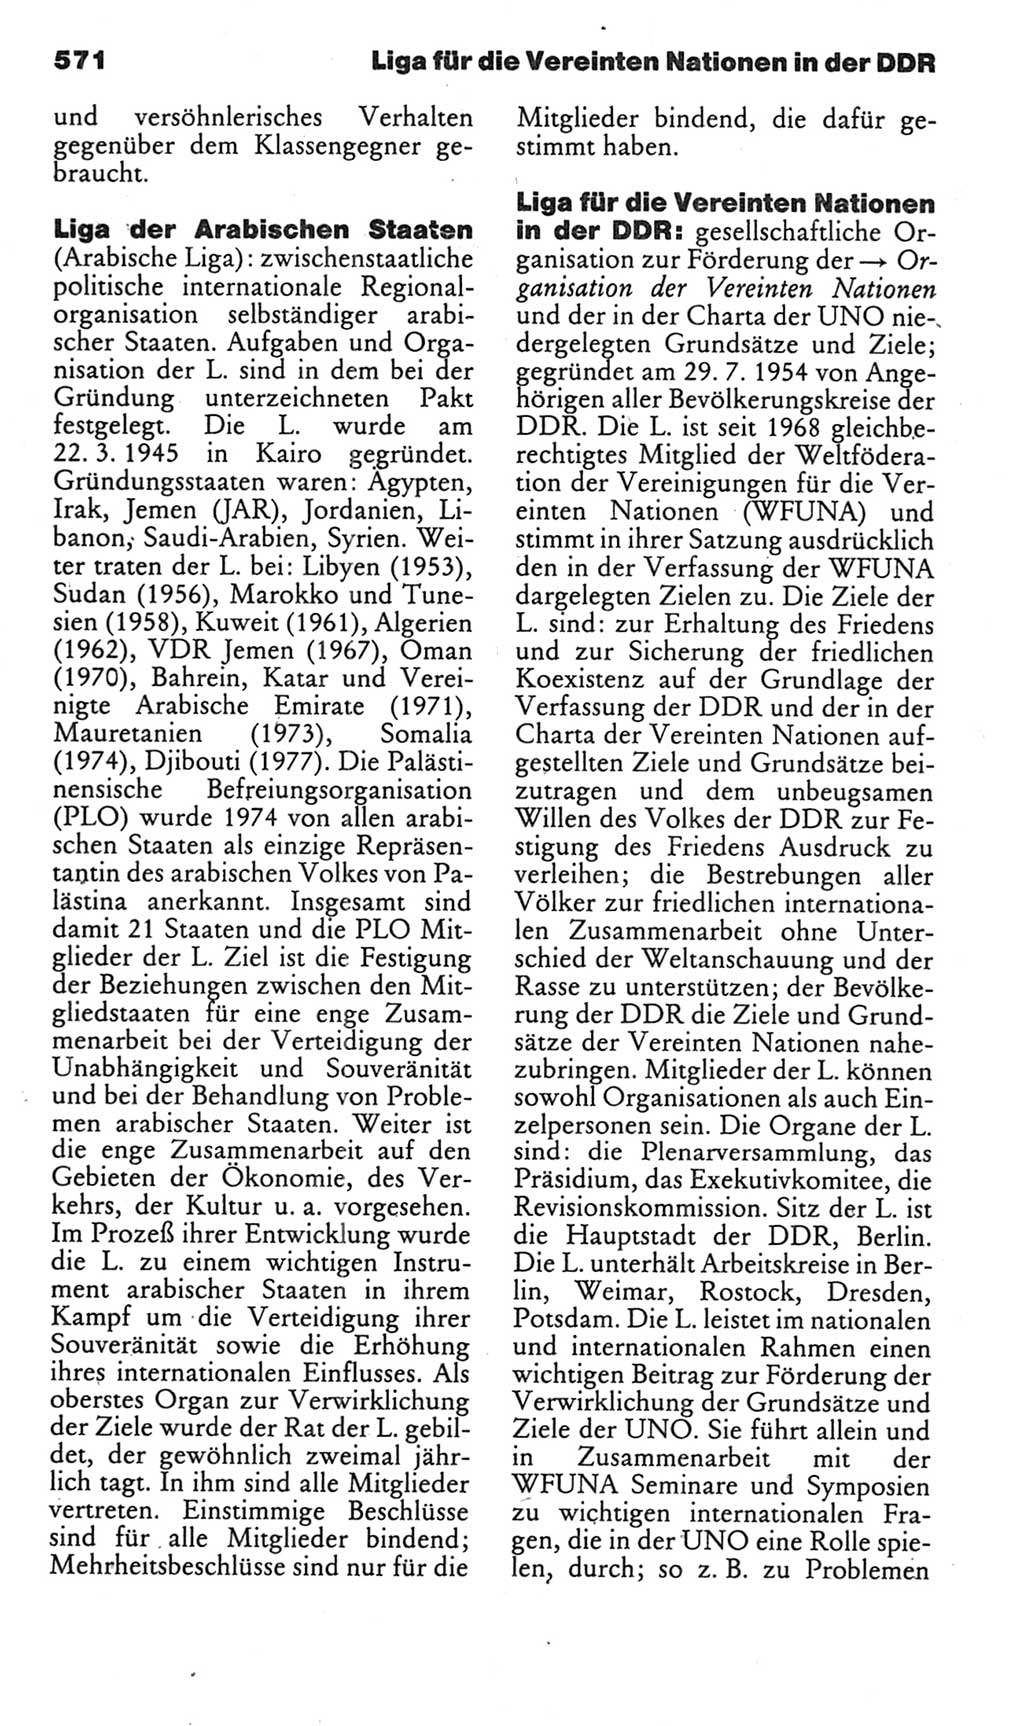 Kleines politisches Wörterbuch [Deutsche Demokratische Republik (DDR)] 1985, Seite 571 (Kl. pol. Wb. DDR 1985, S. 571)